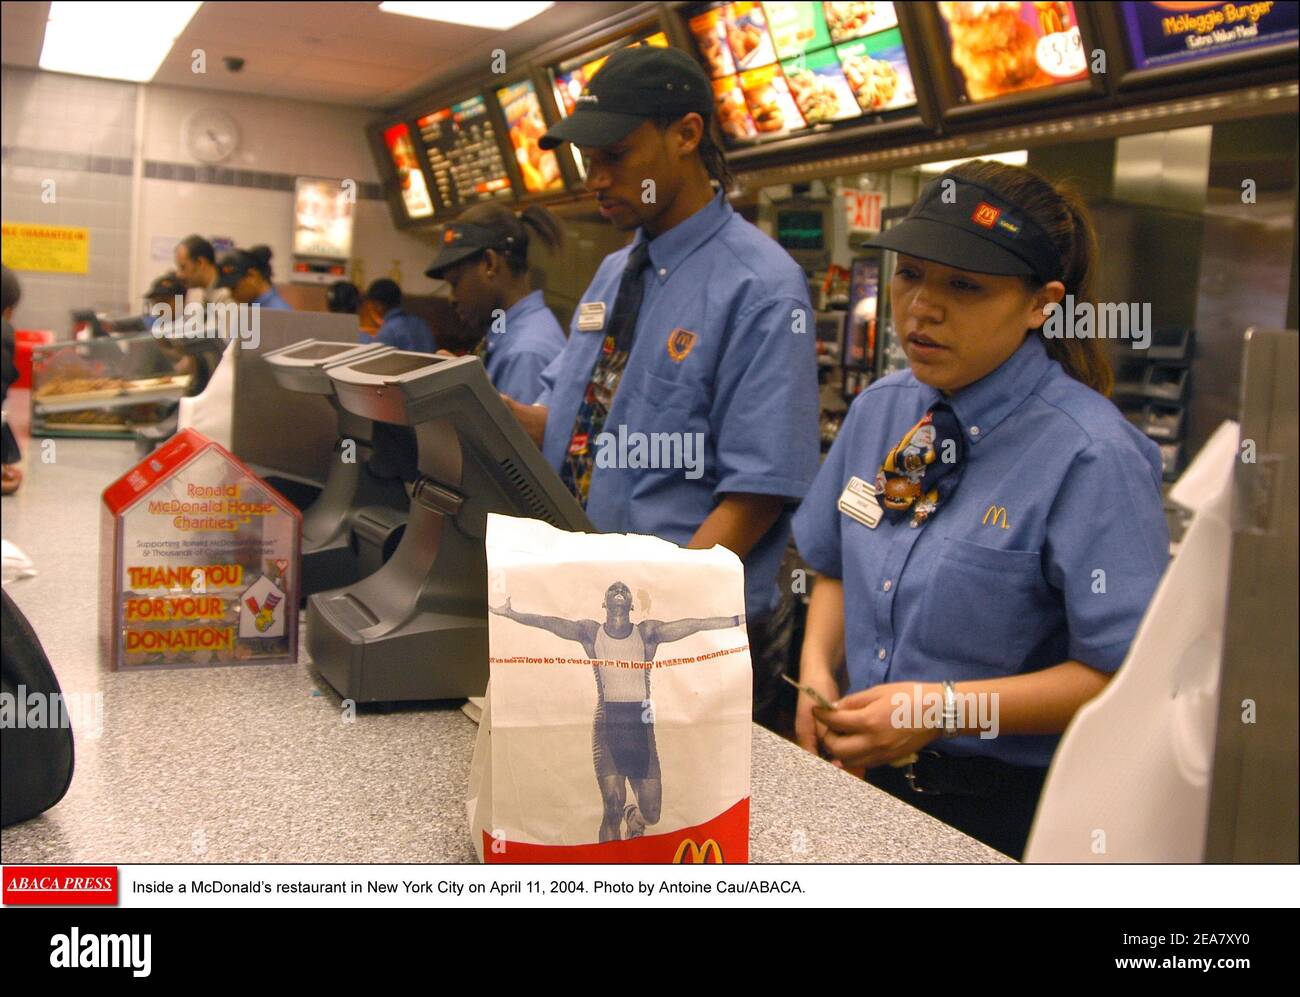 À l'intérieur d'un restaurant McDonald's à New York le 11 avril 2004. Photo par Antoine Cau/ABACA. Banque D'Images